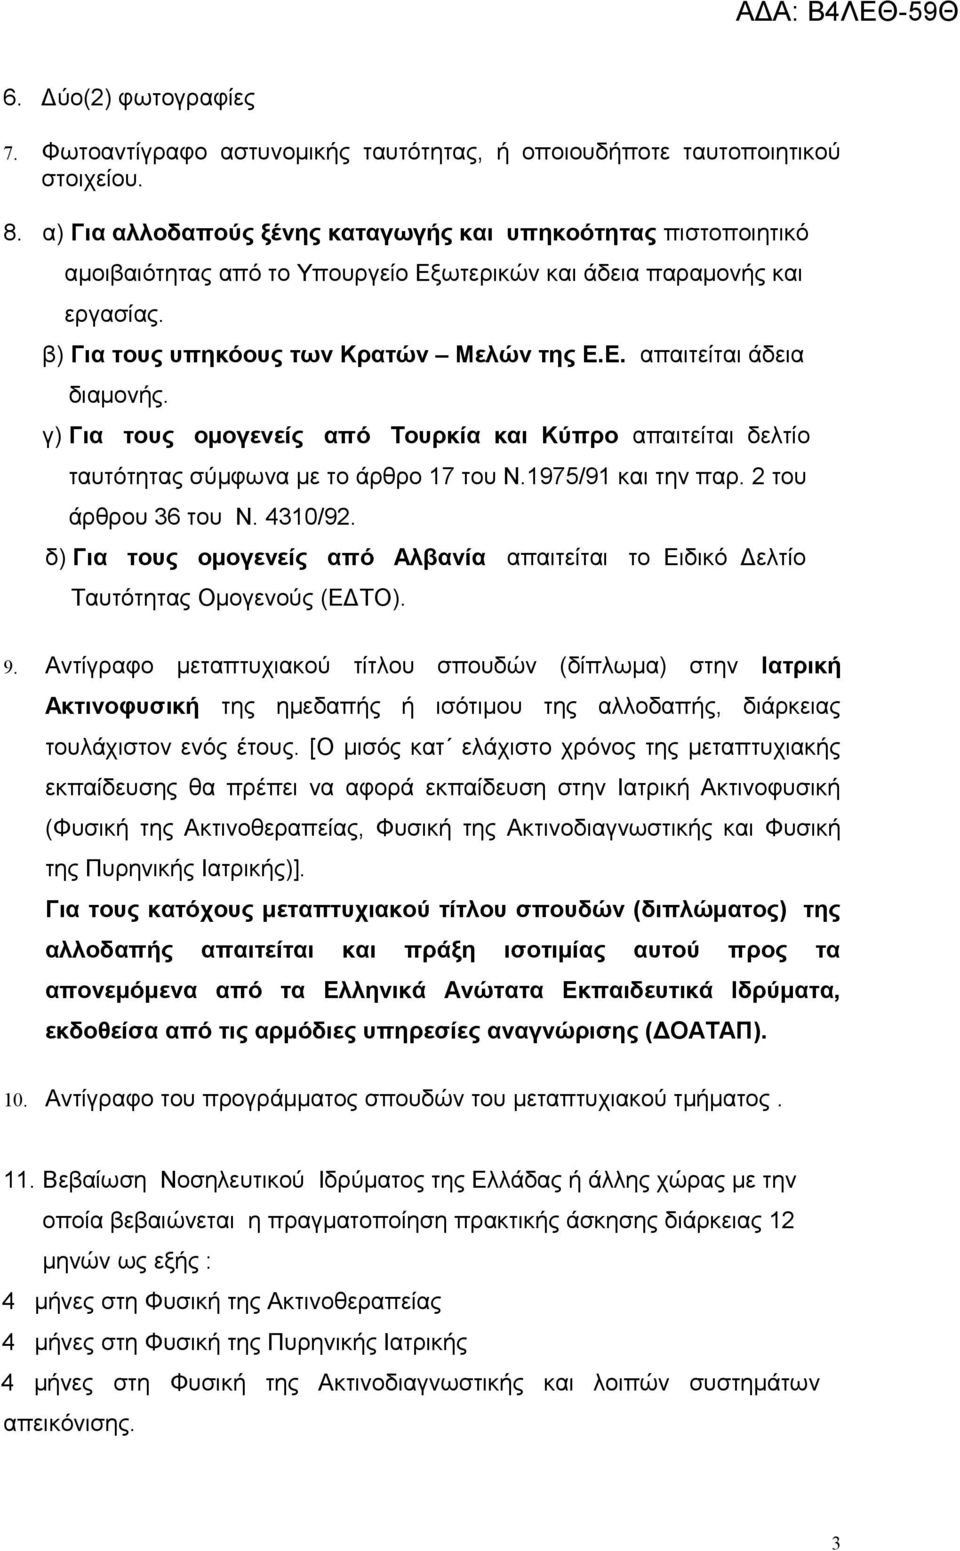 γ) Για τους ομογενείς από Τουρκία και Κύπρο απαιτείται δελτίο ταυτότητας σύμφωνα με το άρθρο 17 του Ν.1975/91 και την παρ. 2 του άρθρου 36 του Ν. 4310/92.